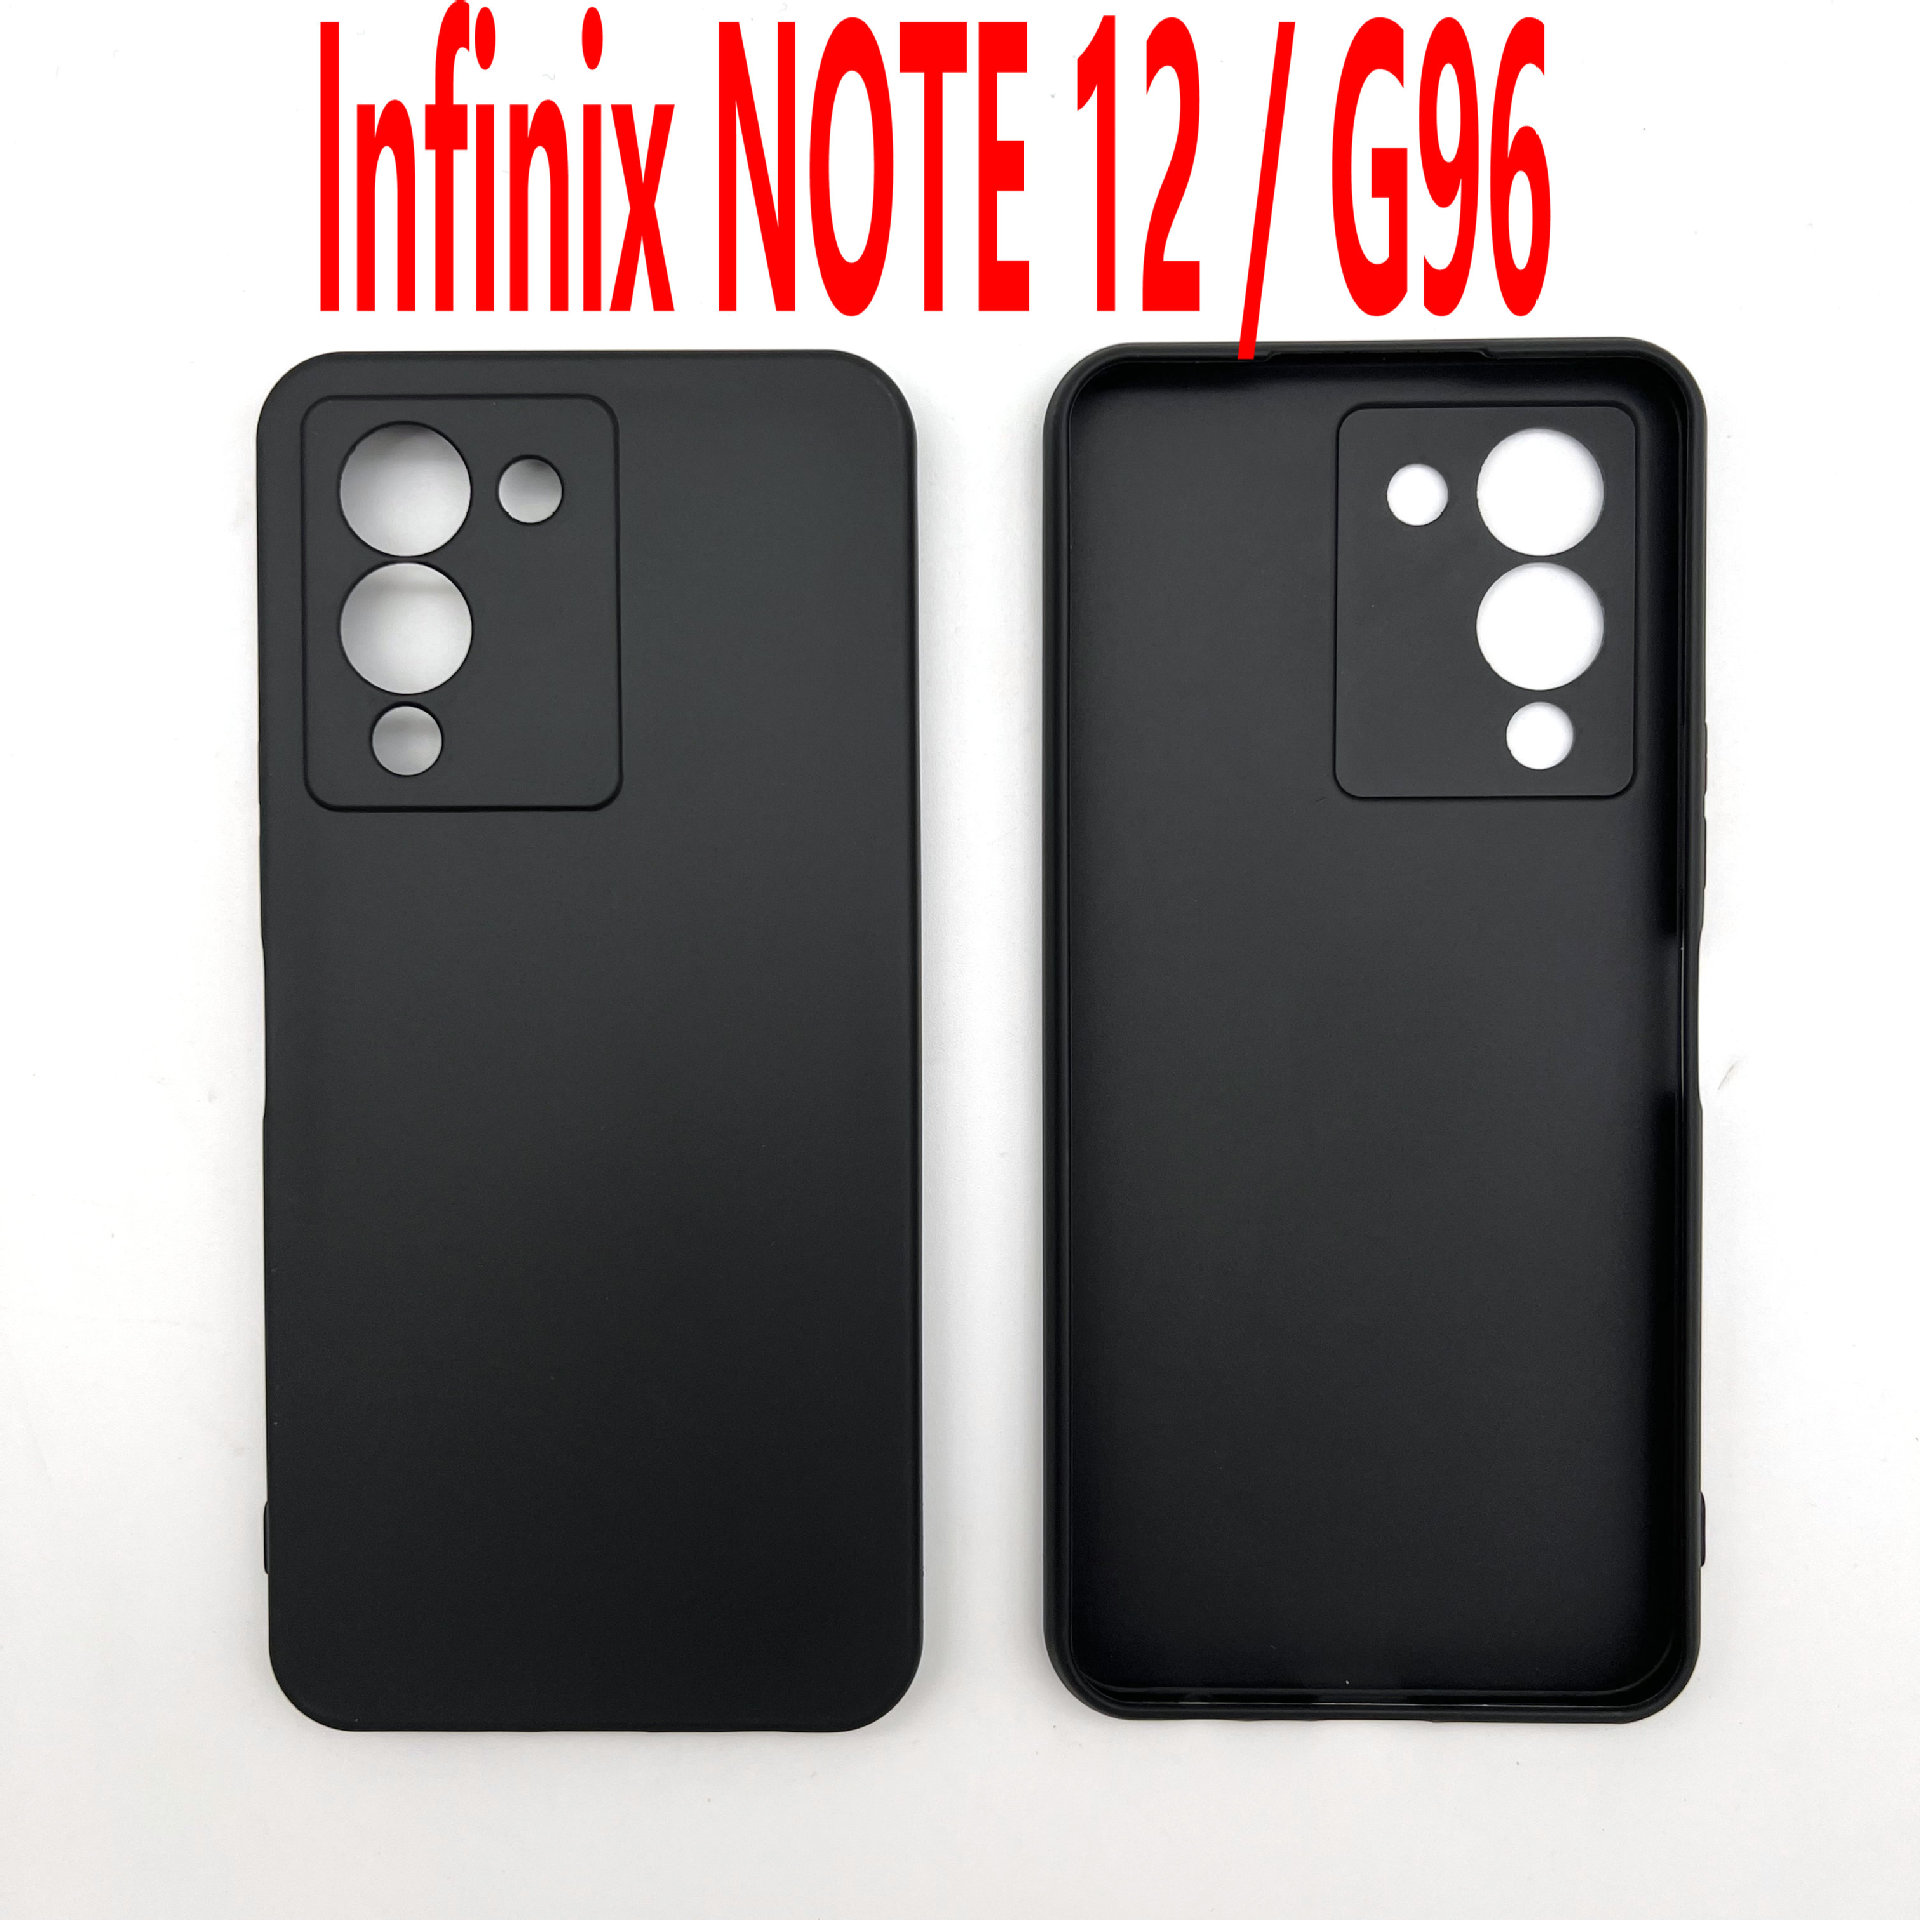 适用于 Infinix NOTE 12 /G96 手机壳 TPU全磨砂皮套素材彩绘素材